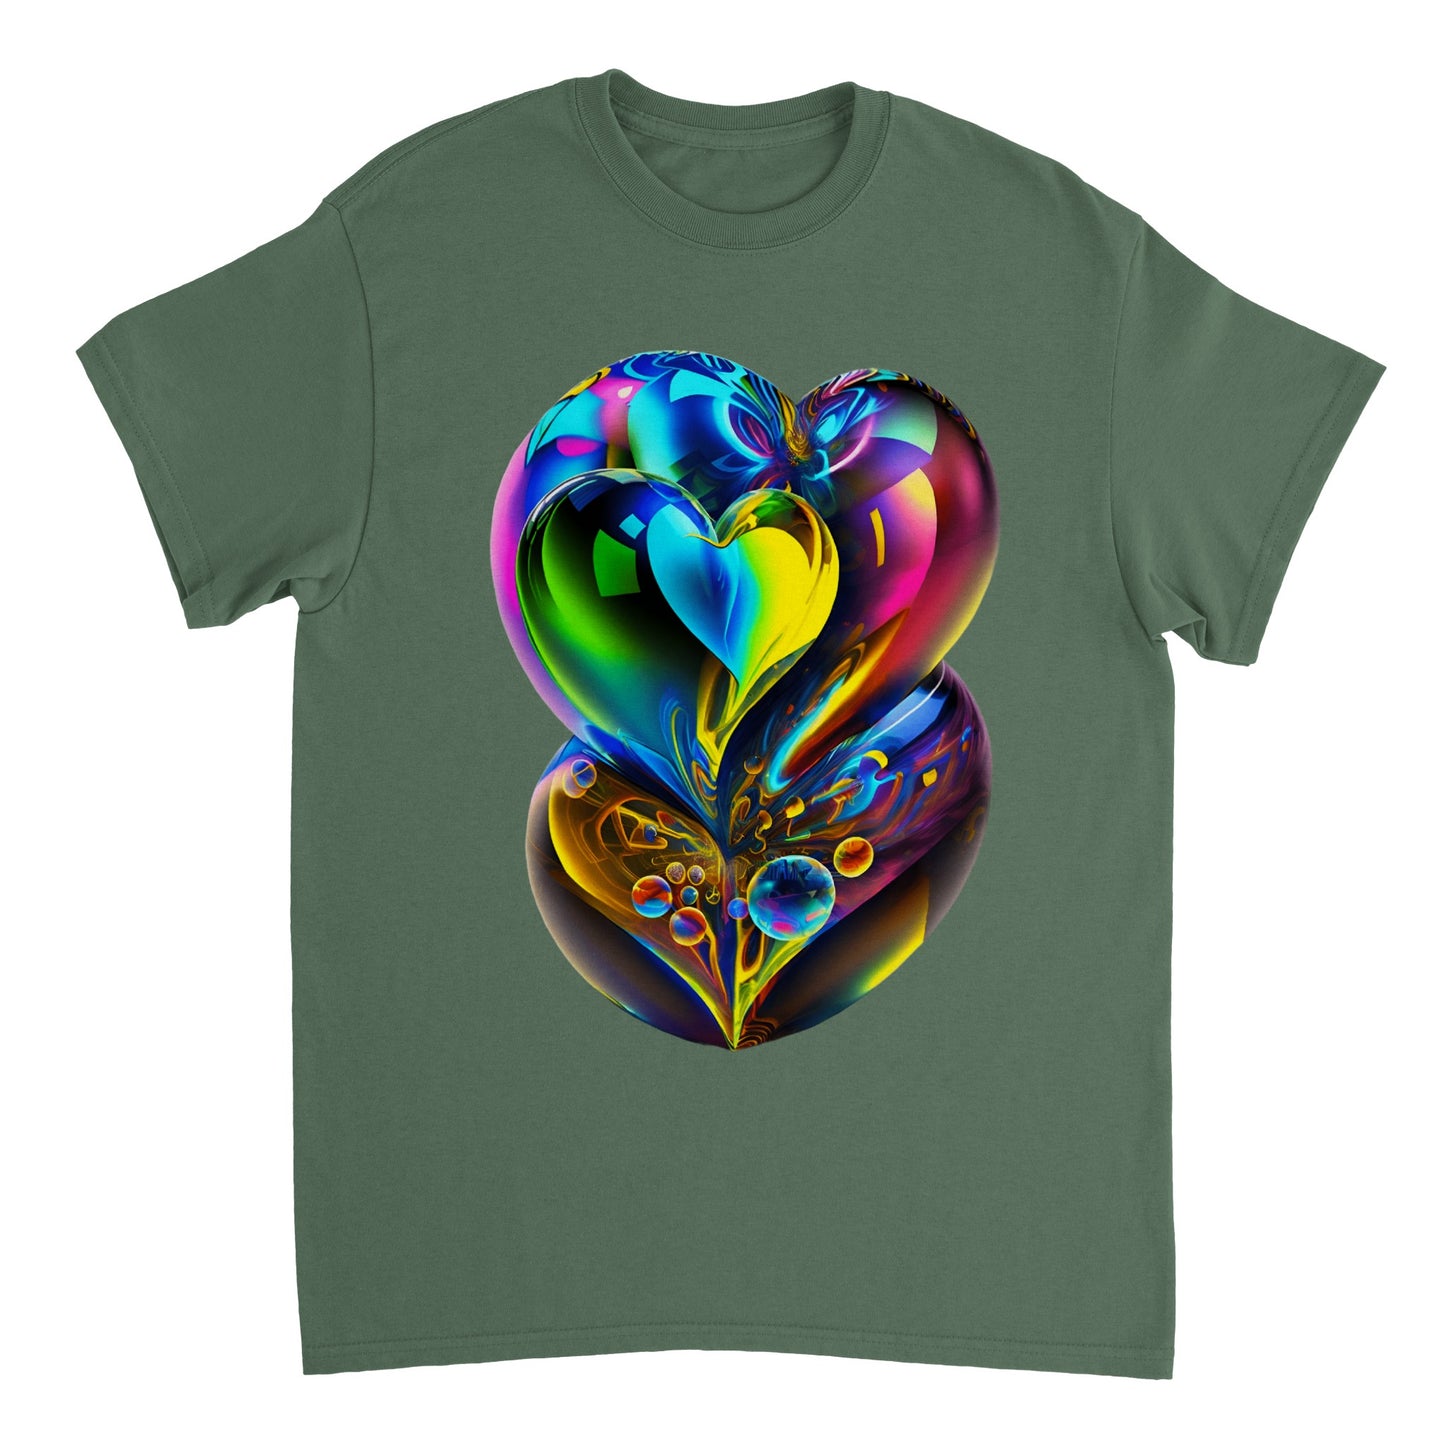 Love Heart - Heavyweight Unisex Crewneck T-shirt 8